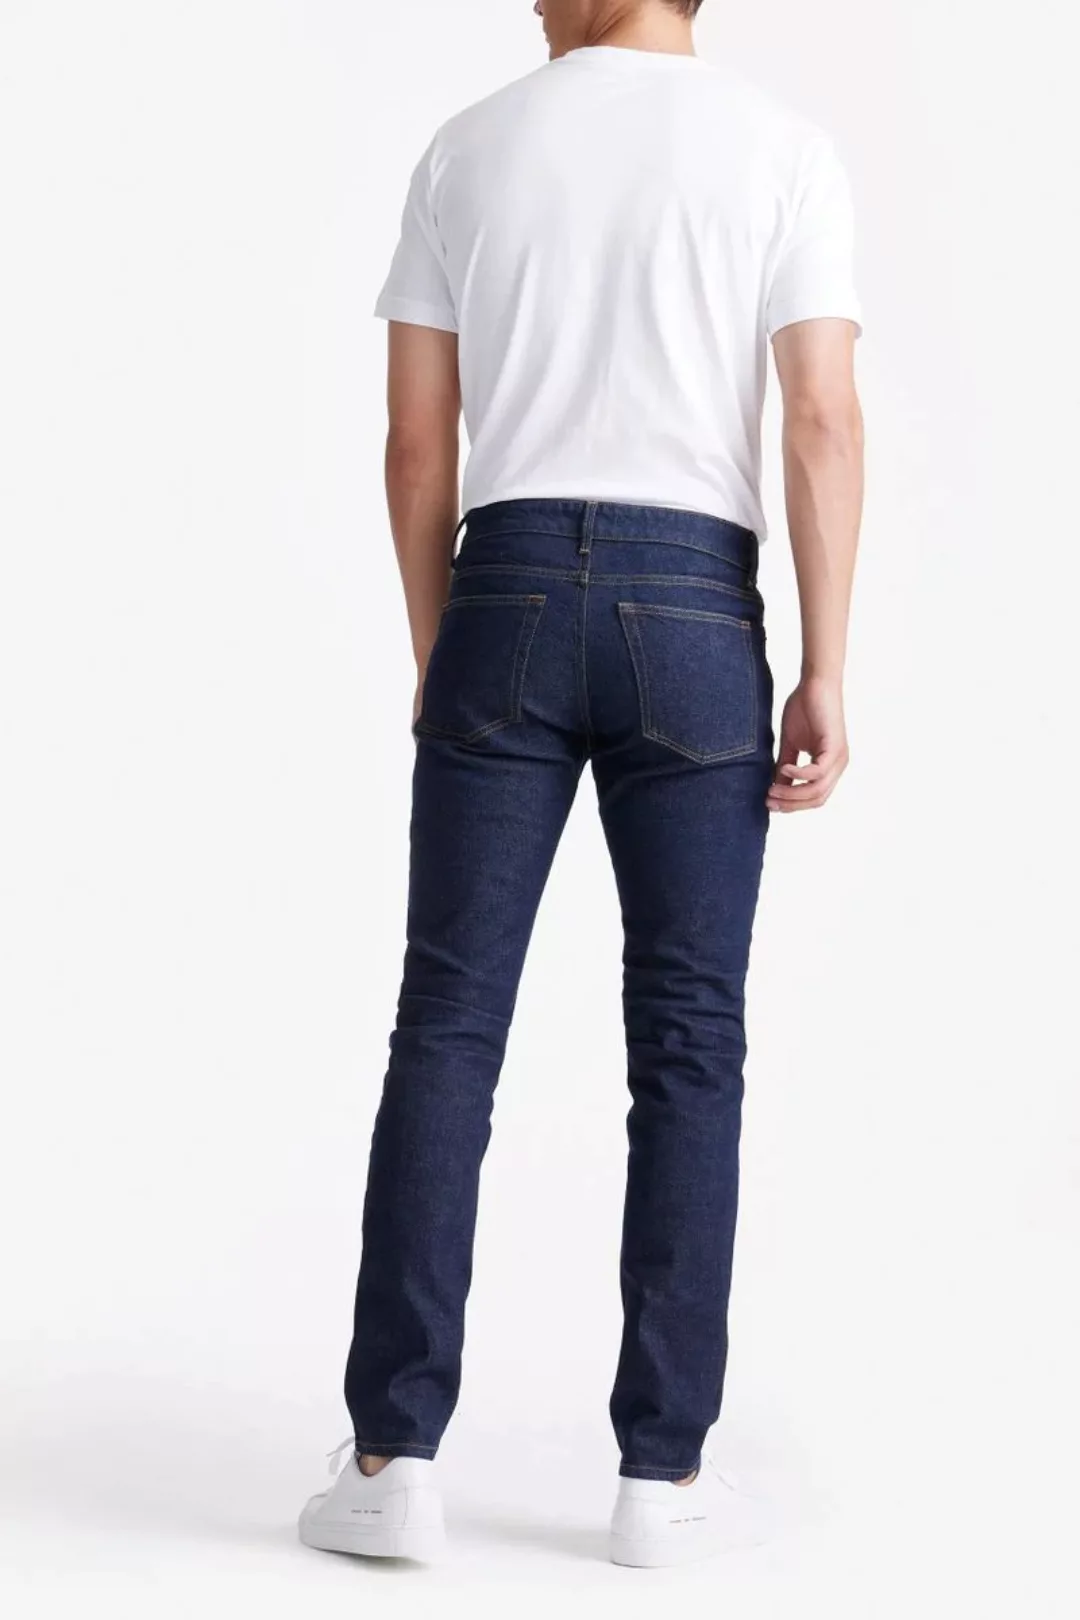 King Essentials The Jason Jeans Navy - Größe W 33 - L 36 günstig online kaufen